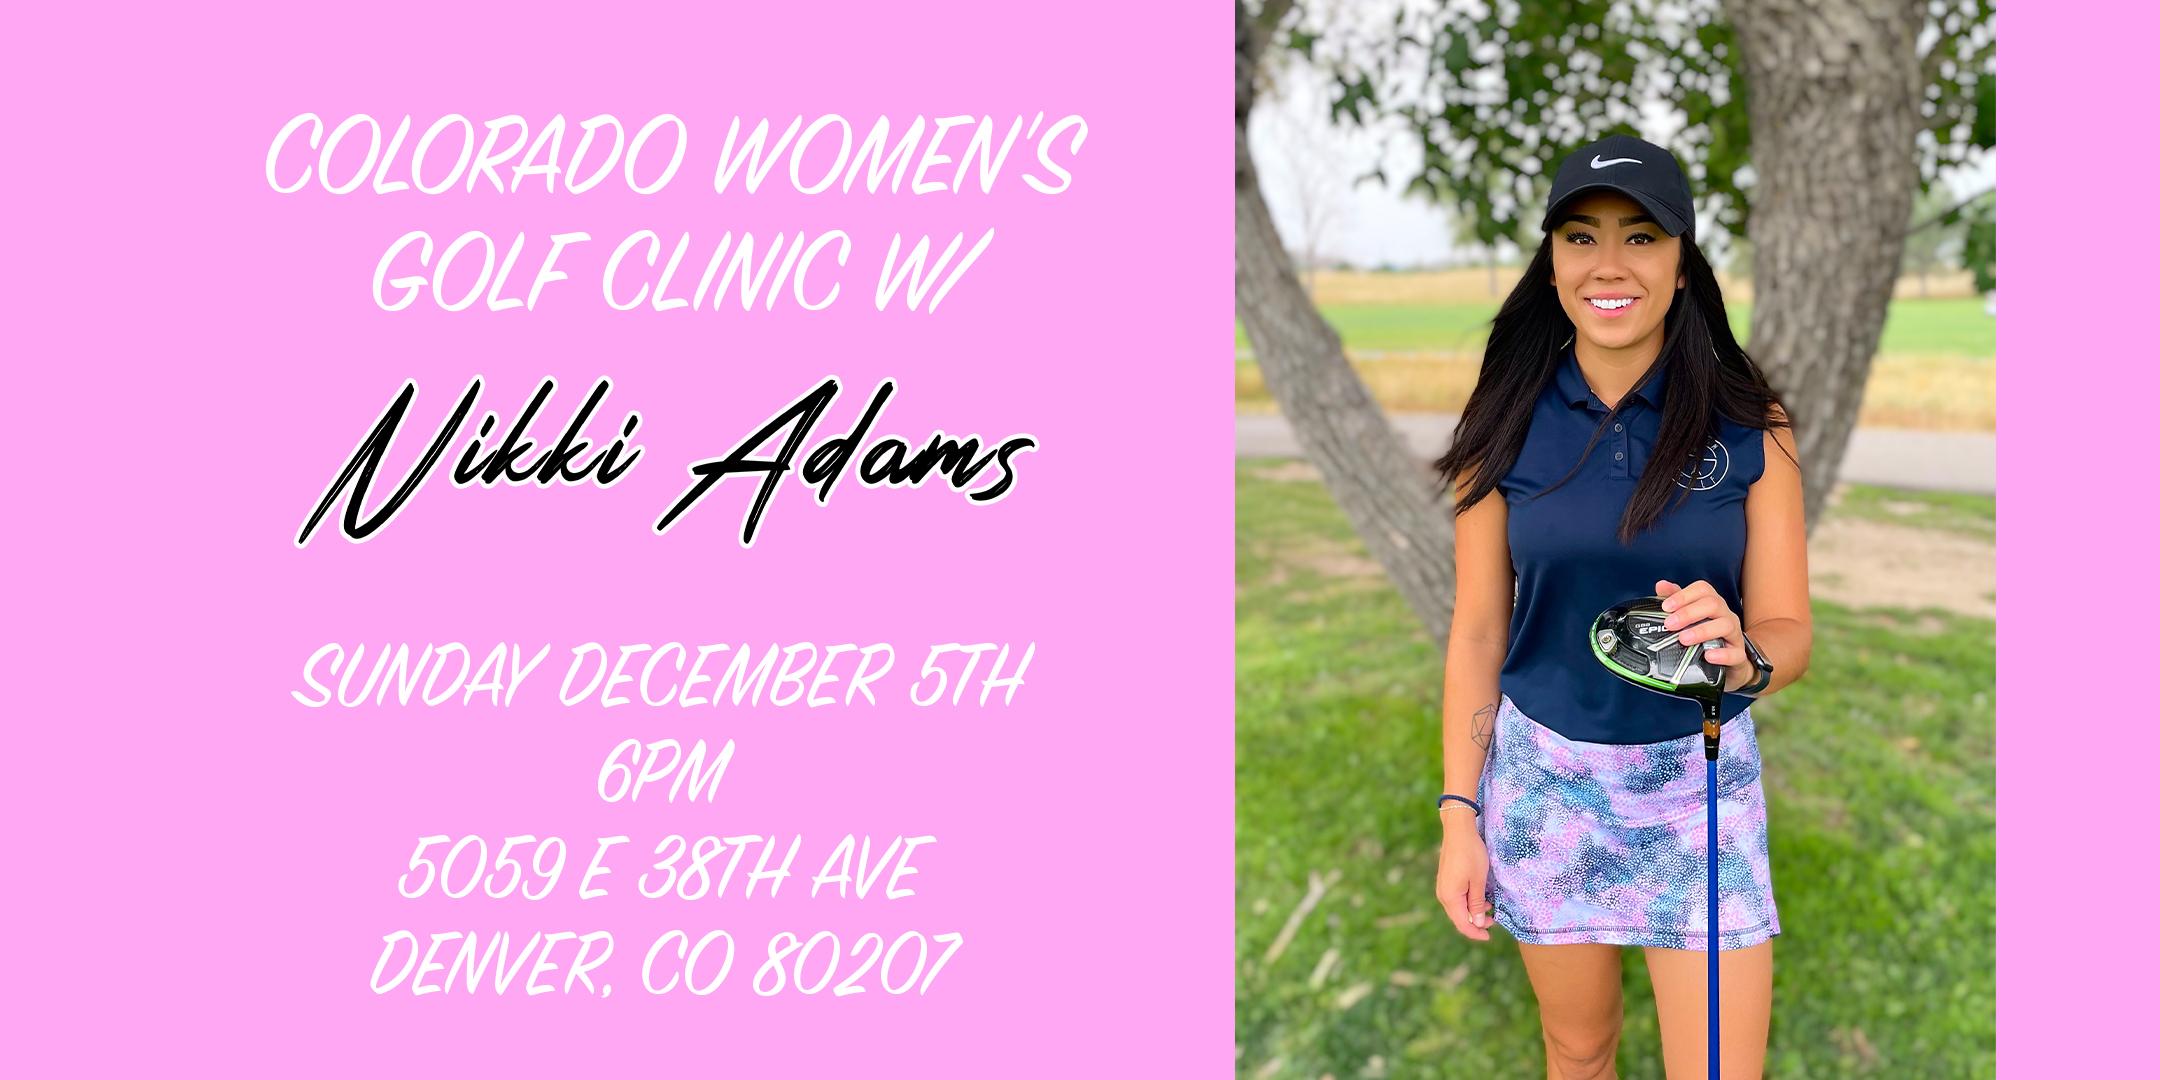 Women's Golf Clinic w/ Nikki Adams